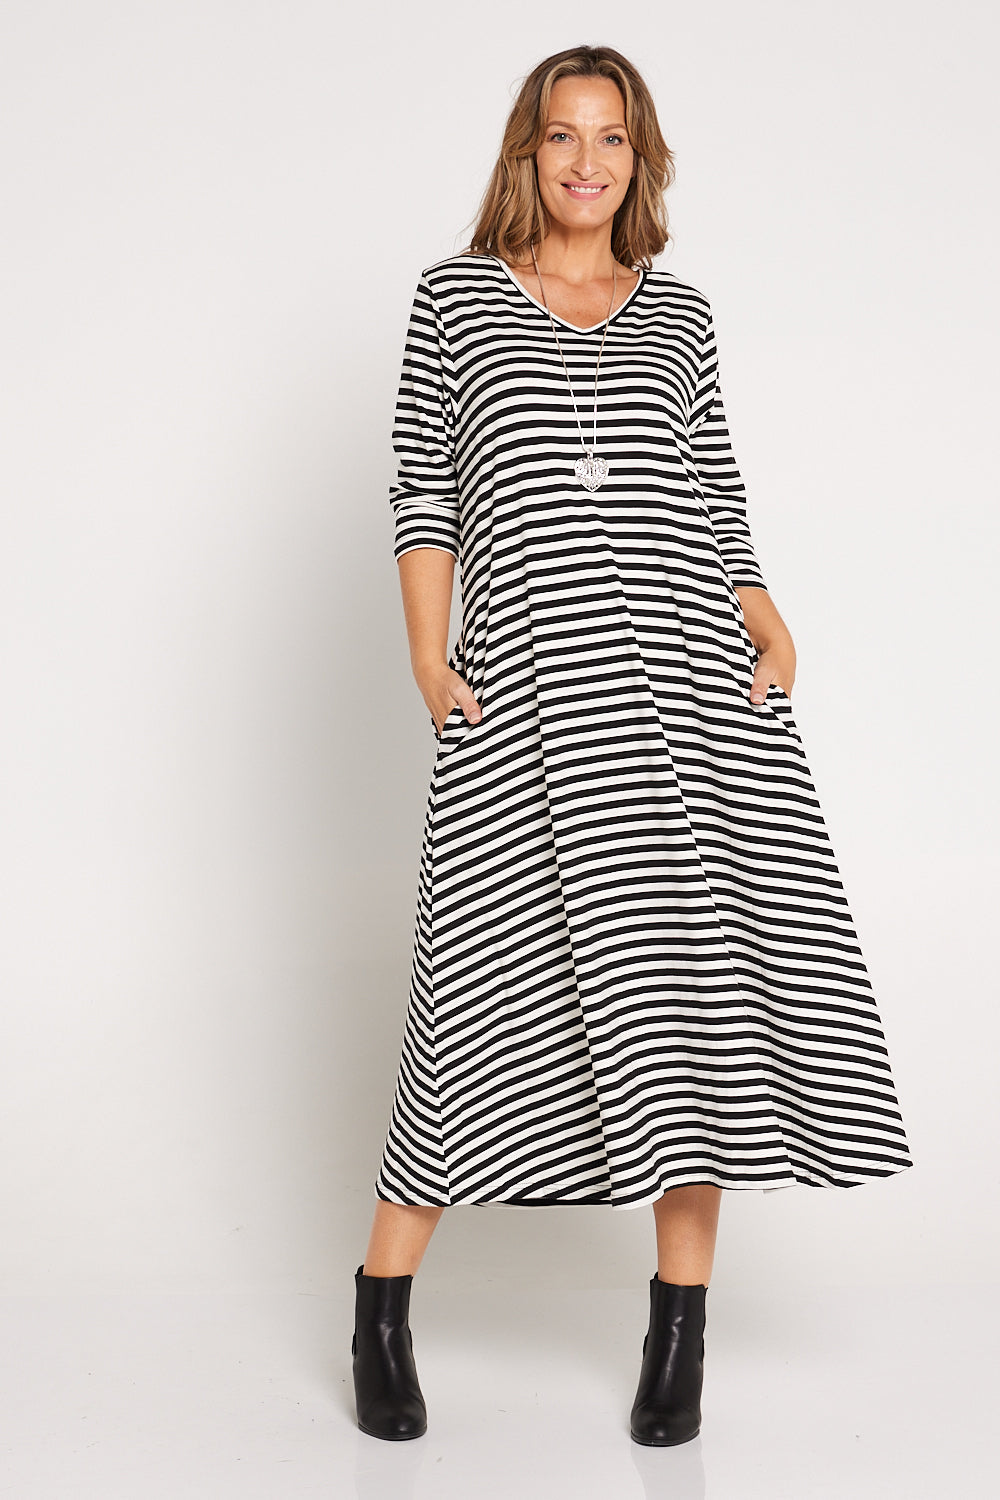 Cameron Dress - White/Black Stripe